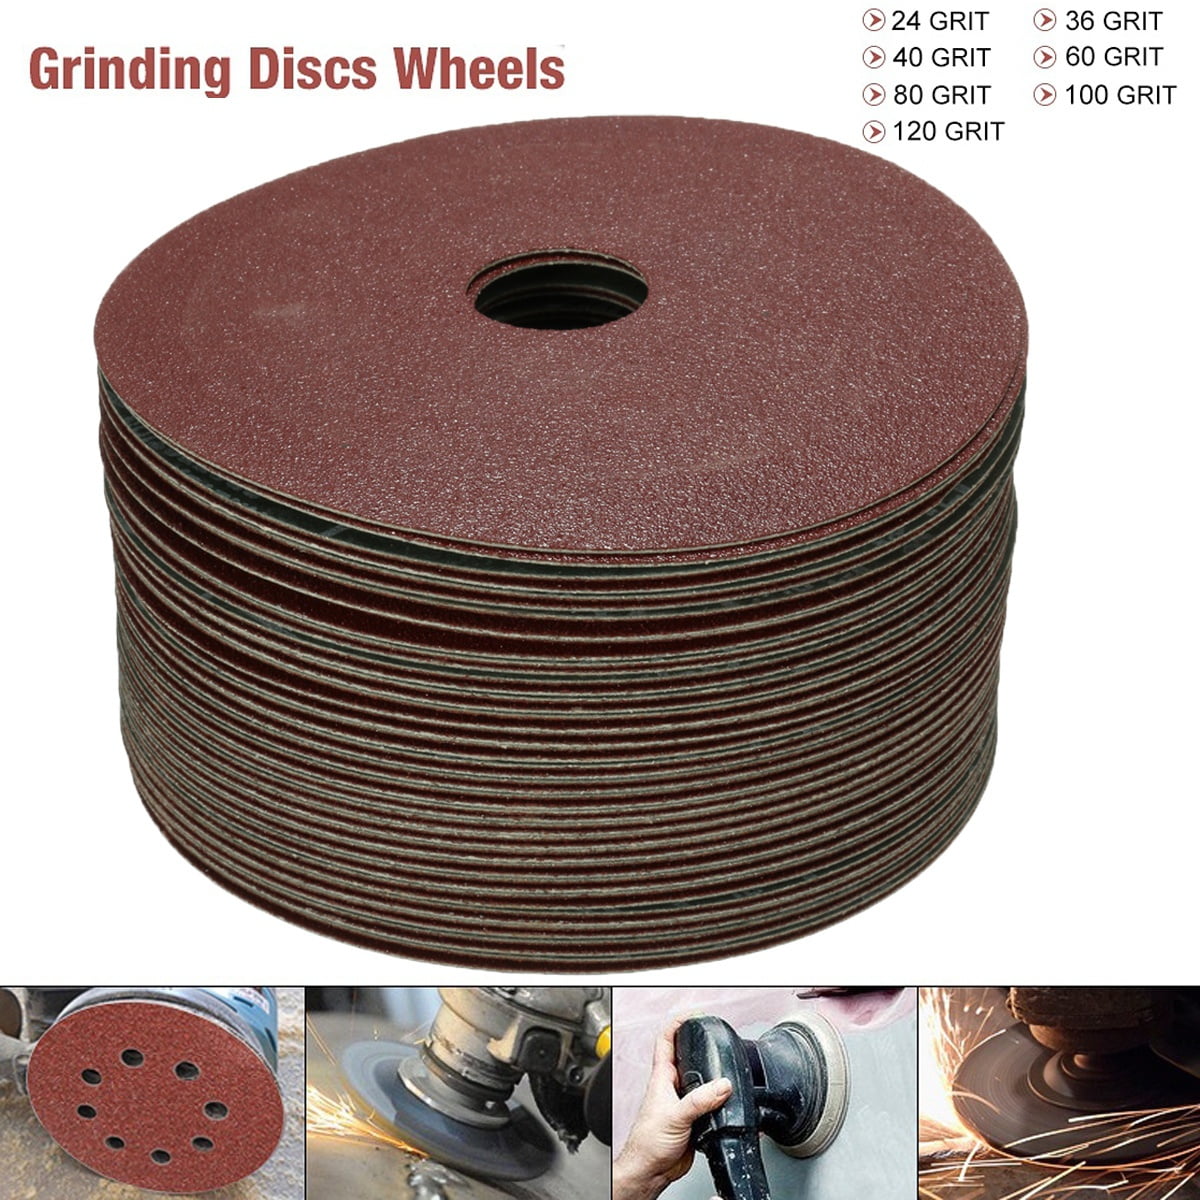 Details about   4'' x 5/8'' Flap Discs Aluminum Oxide Sanding Wheel Angle Grinder 60-320 Grit 